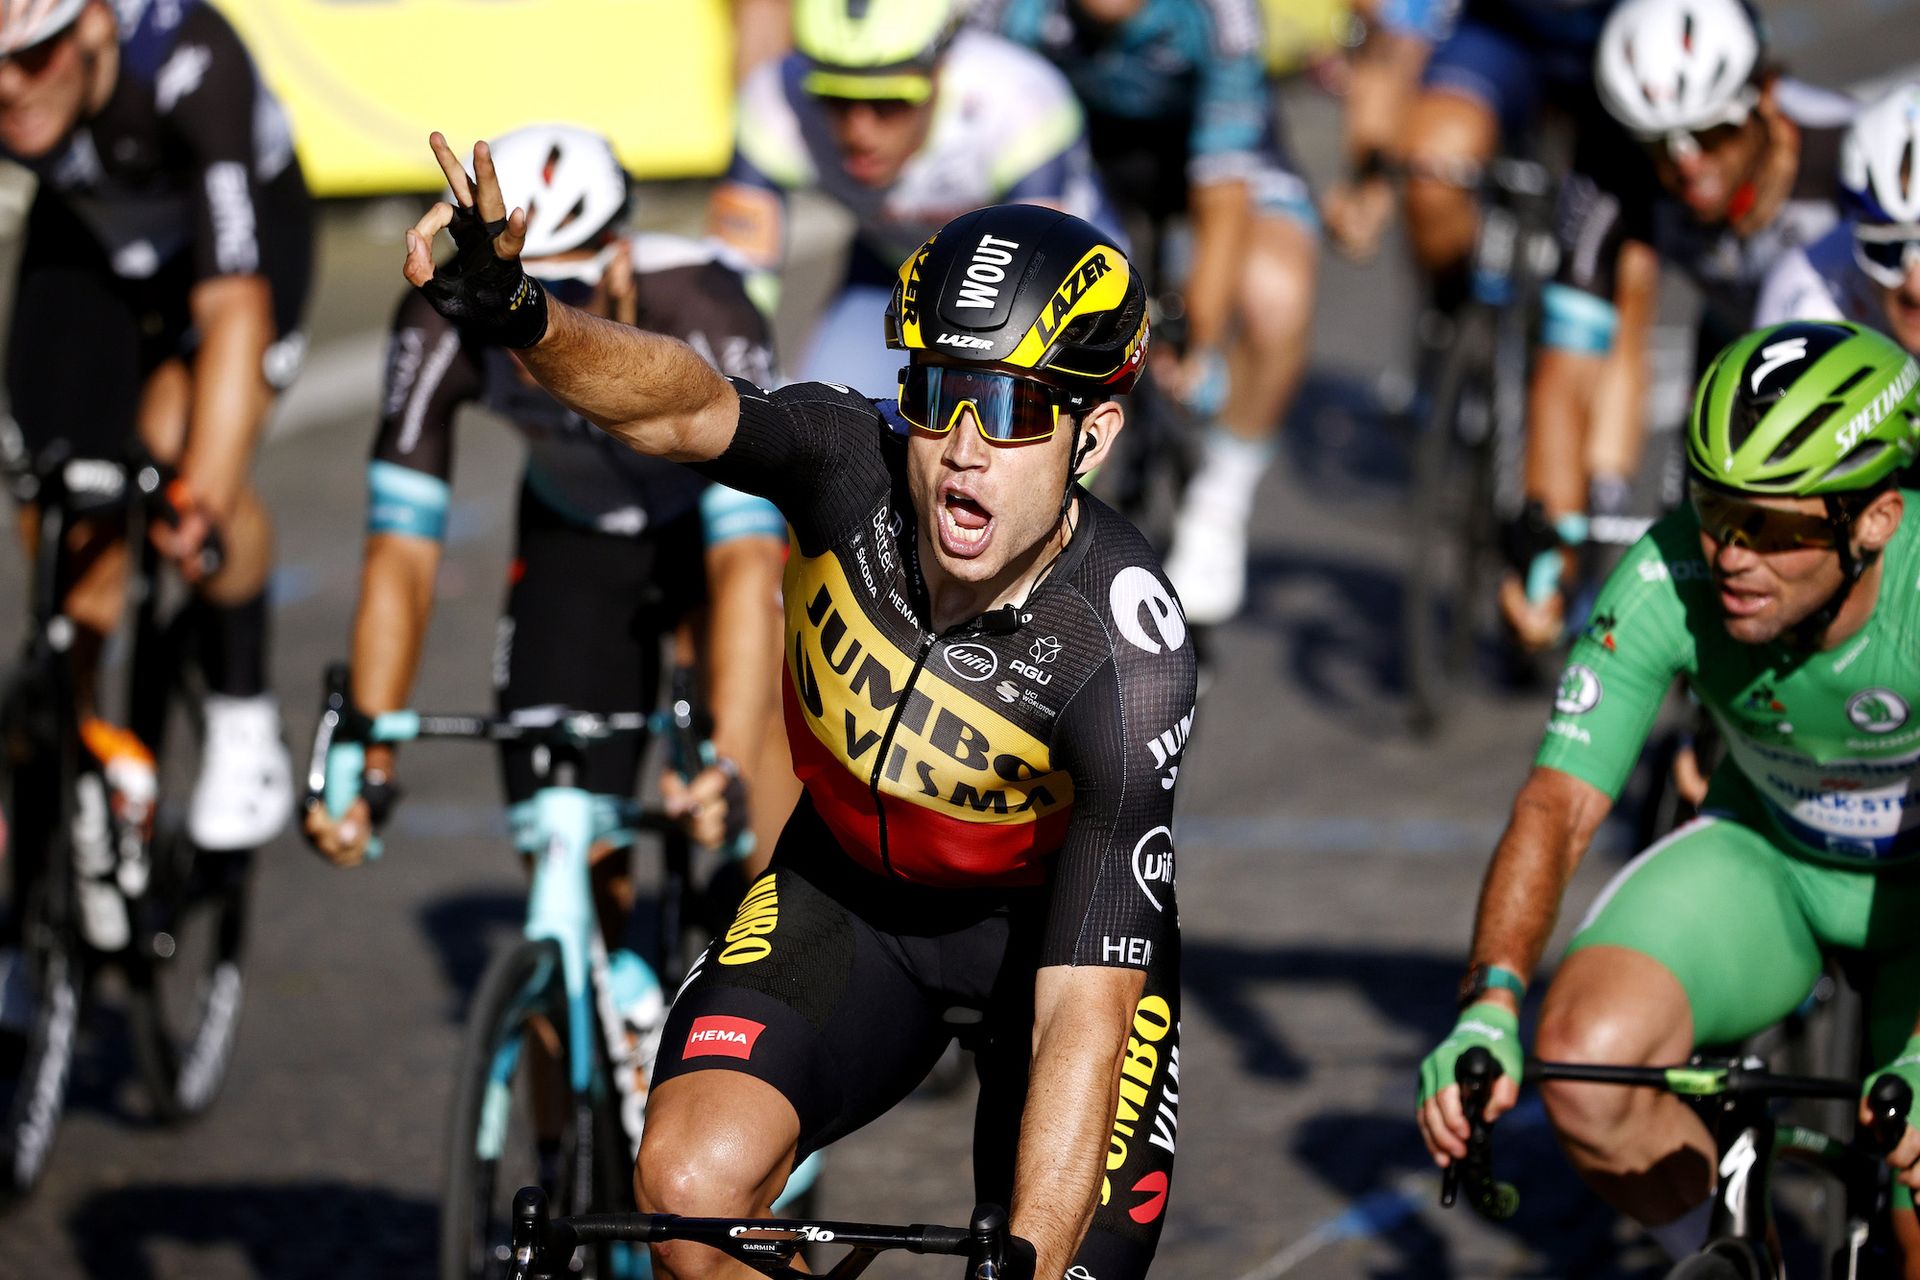 Wout van Aert cherishes 'priceless' Paris Tour de France win despite ...